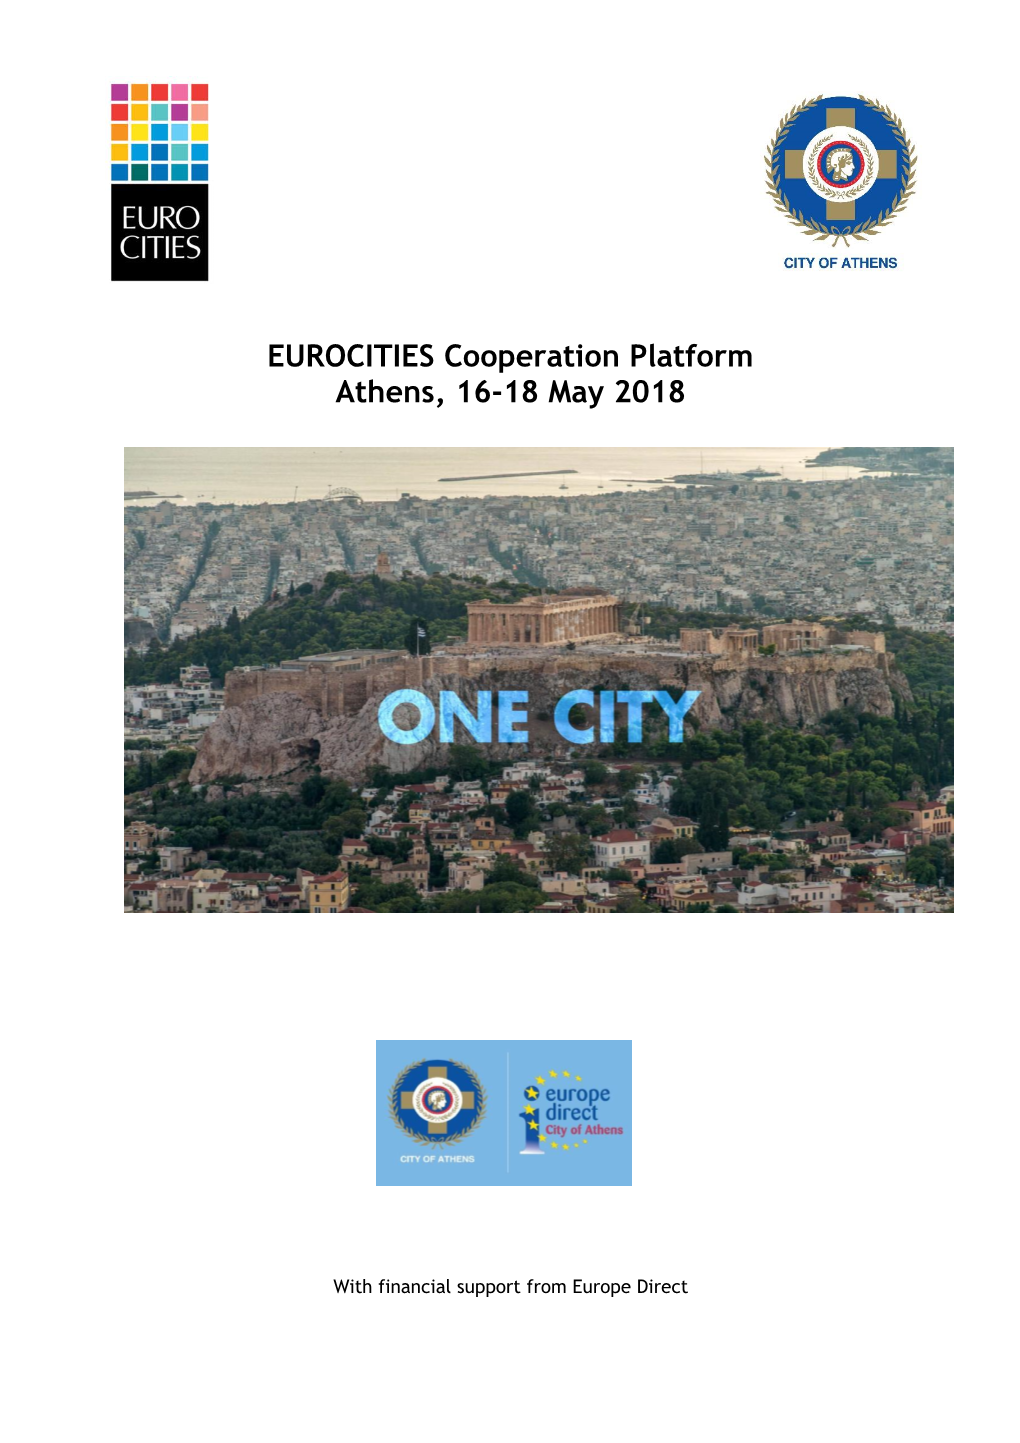 EUROCITIES Cooperation Platform Athens, 16-18 May 2018